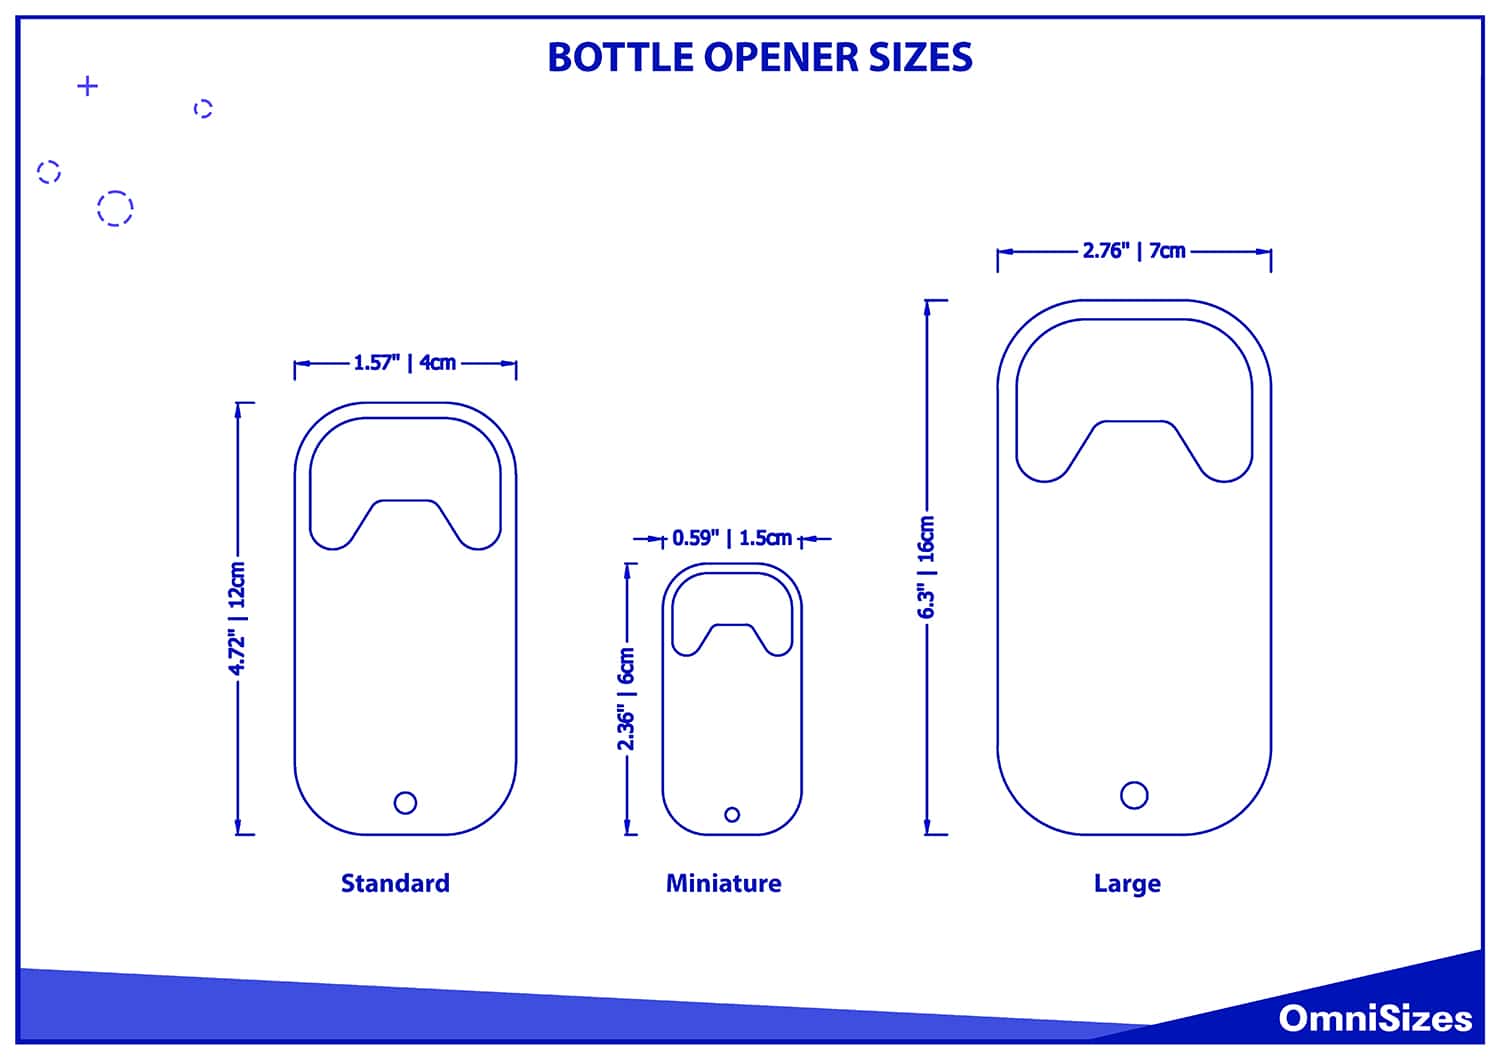 Bottle opener sizes